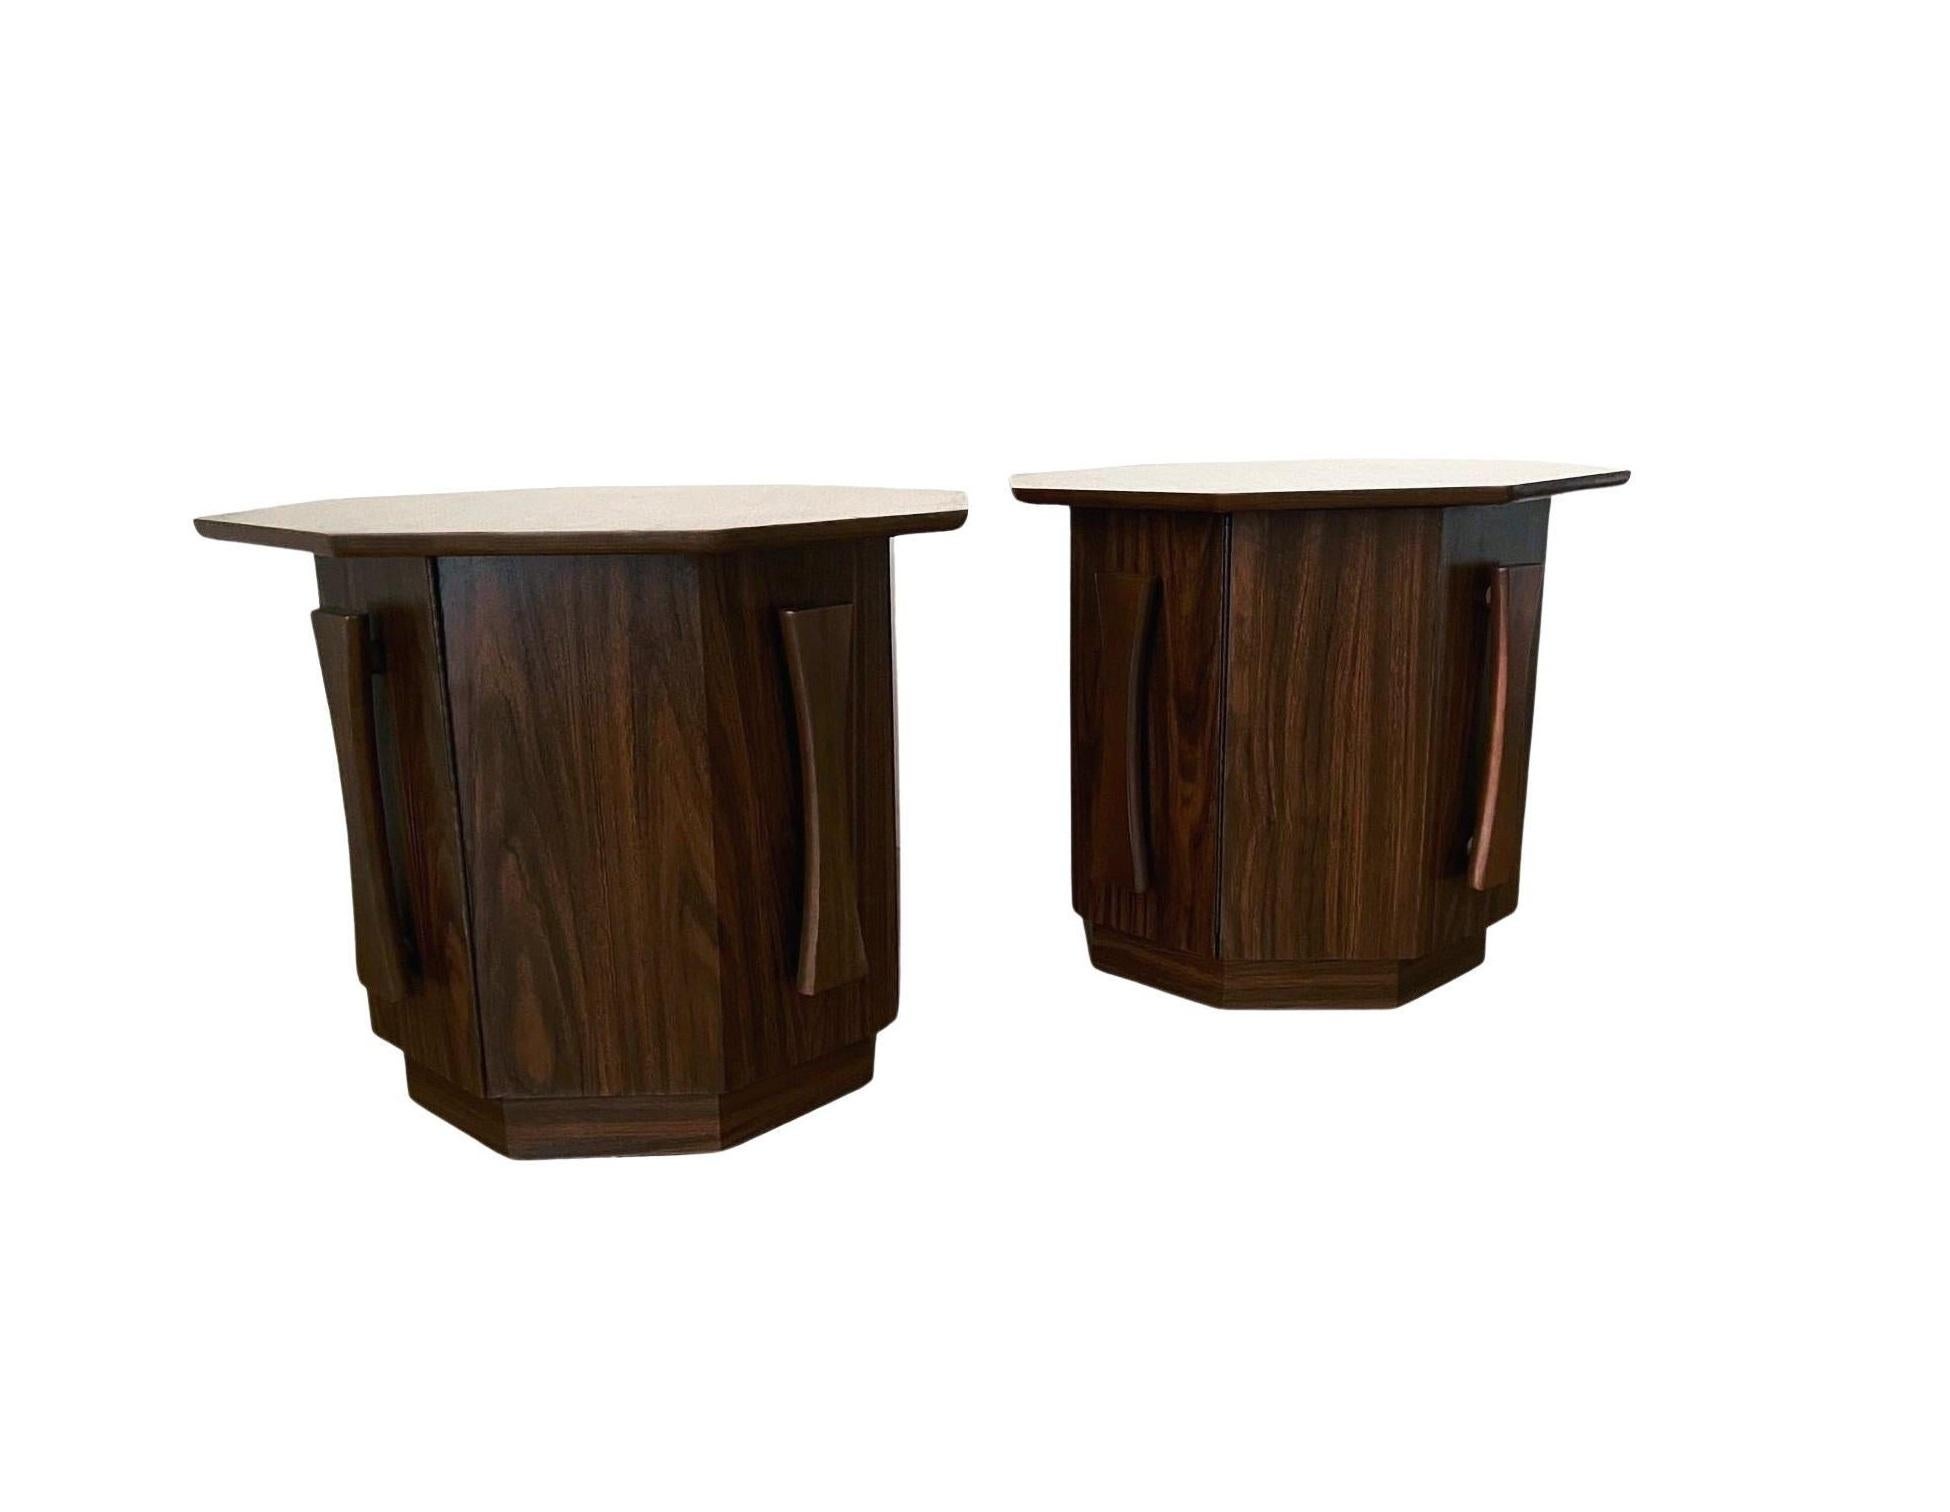 Influencée par les designs d'inspiration brutaliste de Paul Evans, cette paire de tables d'appoint/de chevet assorties, d'une beauté stupéfiante, se démarque véritablement. Chaque meuble aux proportions parfaites et à la forme octogonale à huit